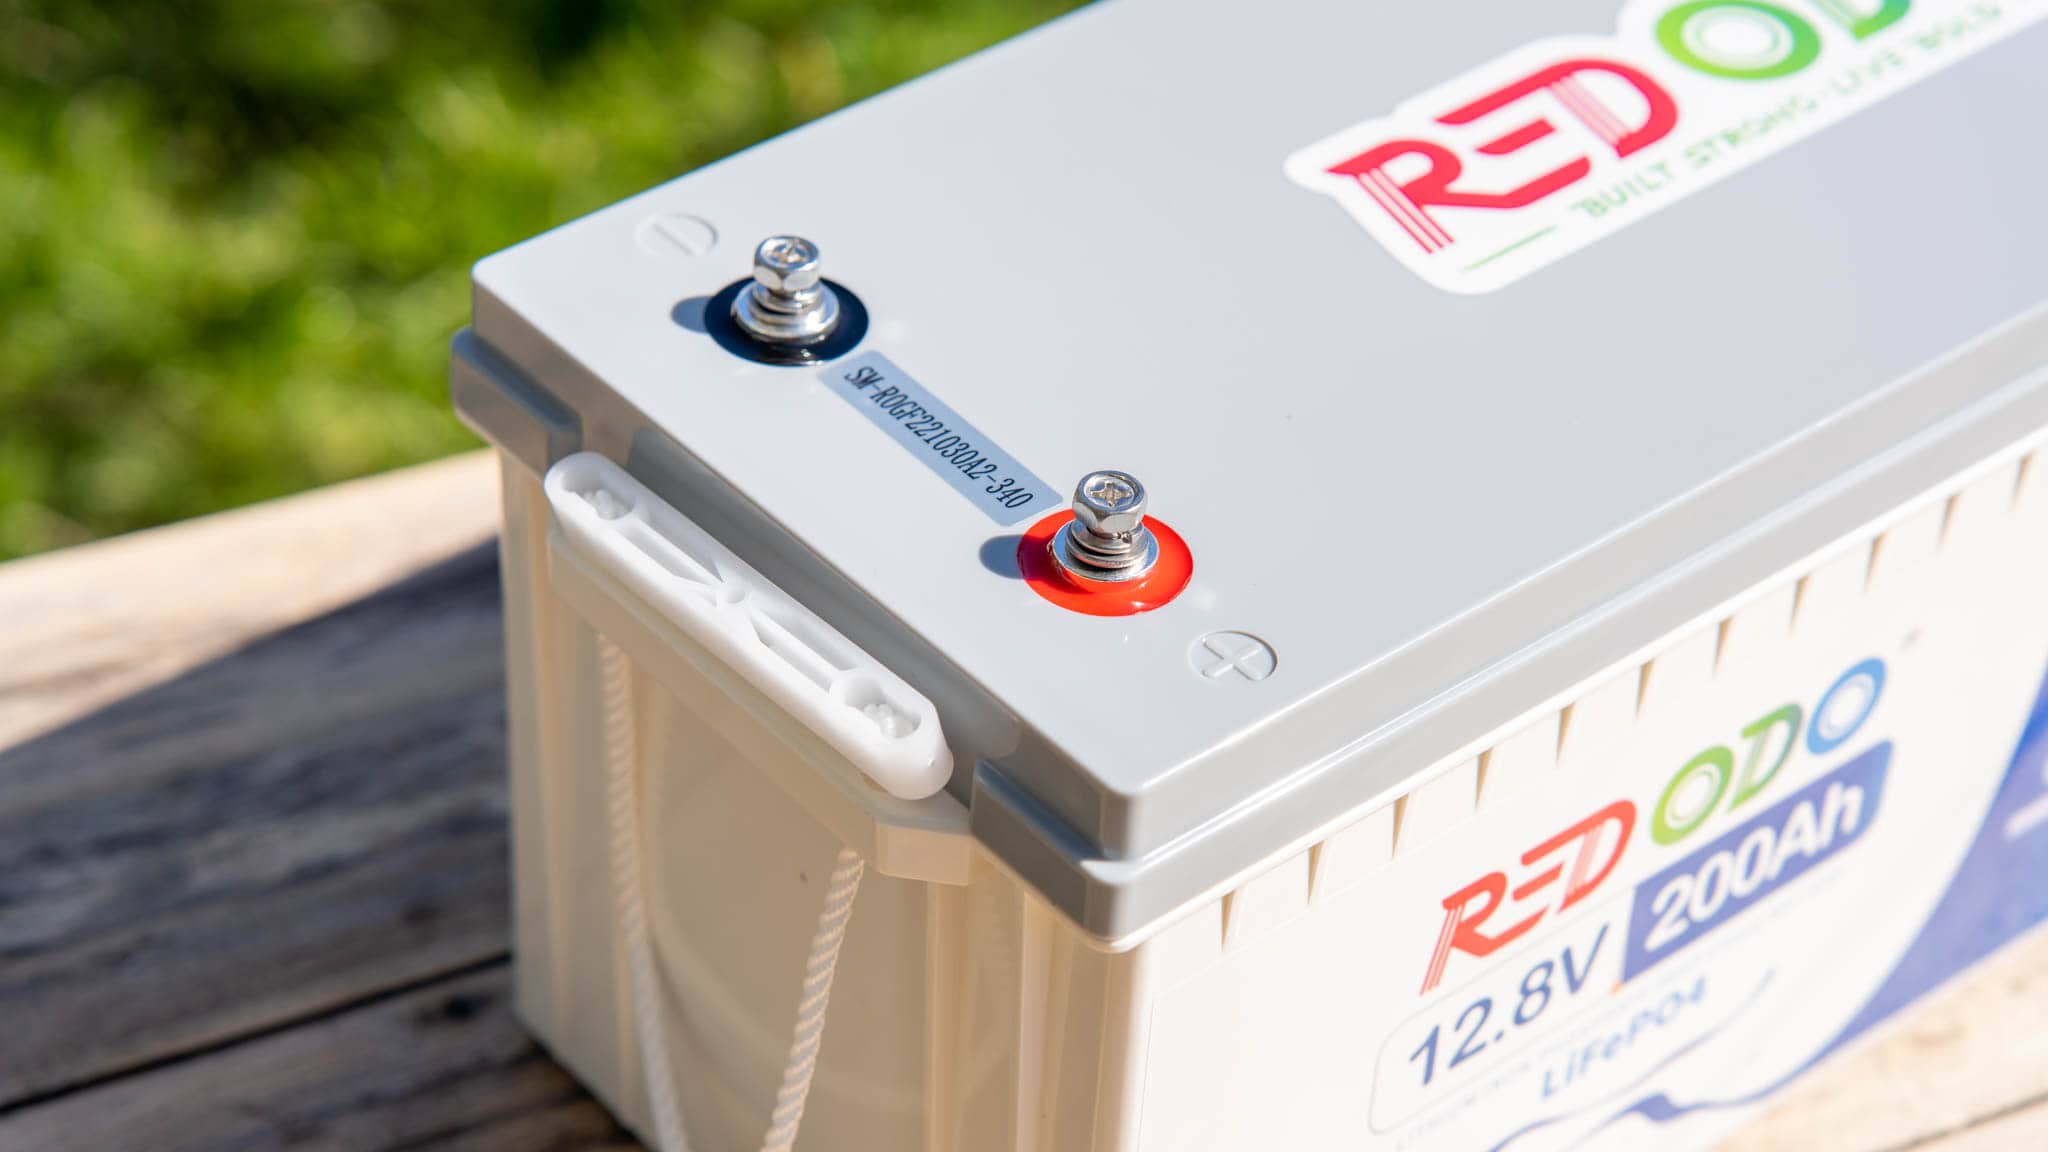 Redodo Power-Die günstigsten Batterien für Solar und Wohnmobil!